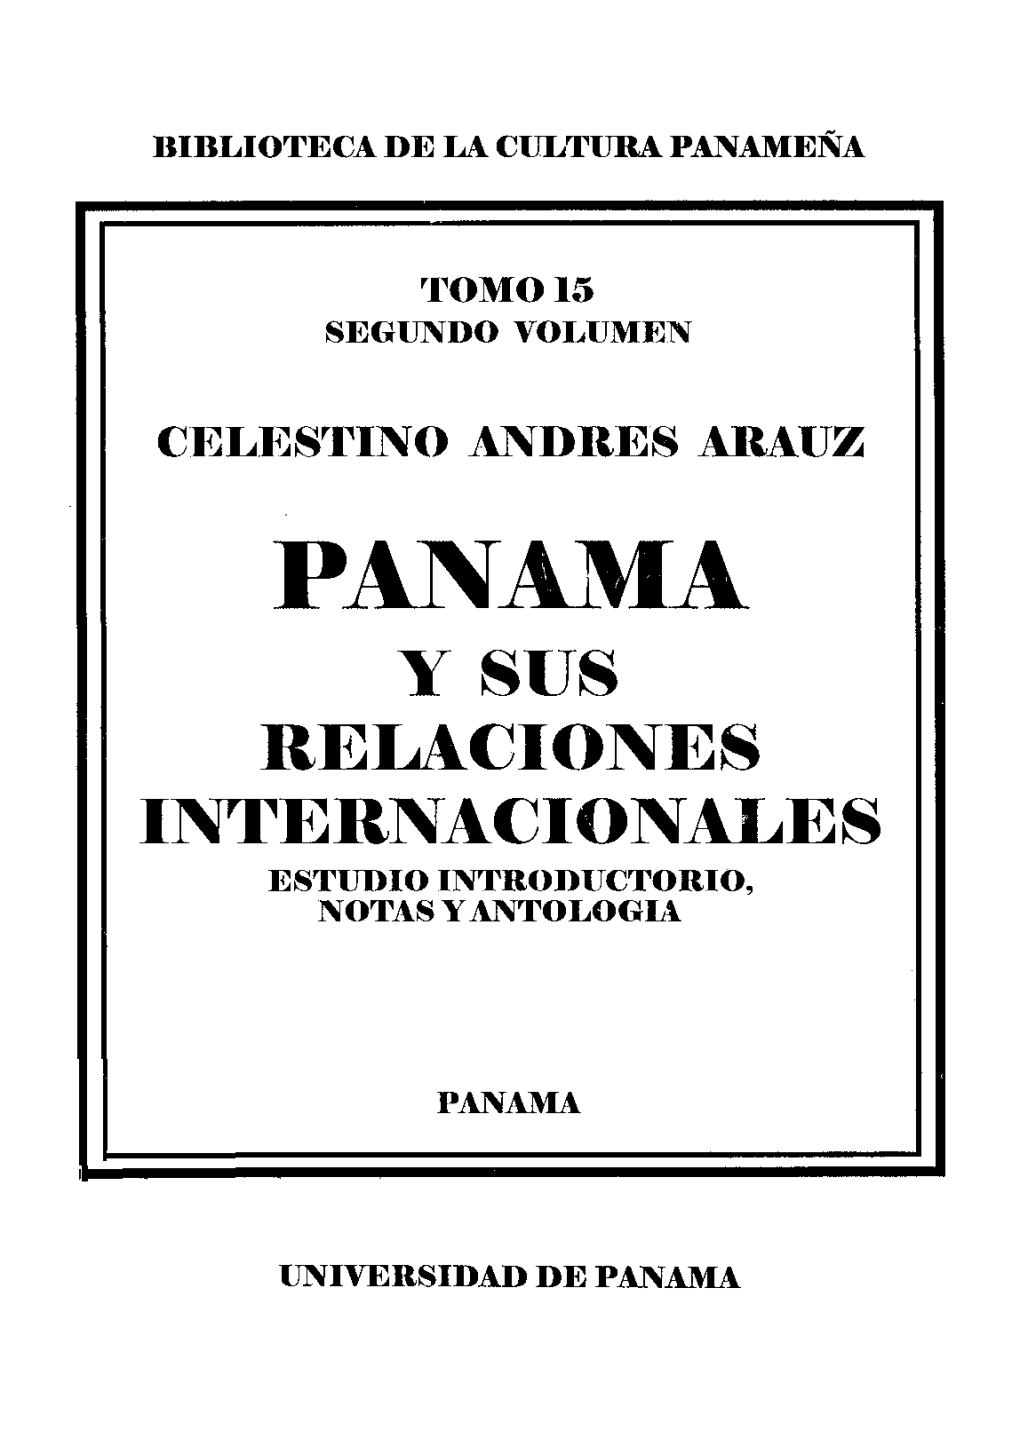 P"AMA Y SUS RELACIONES INTERNACIONALES ESTUDIO INTRODUCTORIO, NOTAS Y ANTOLOGIA